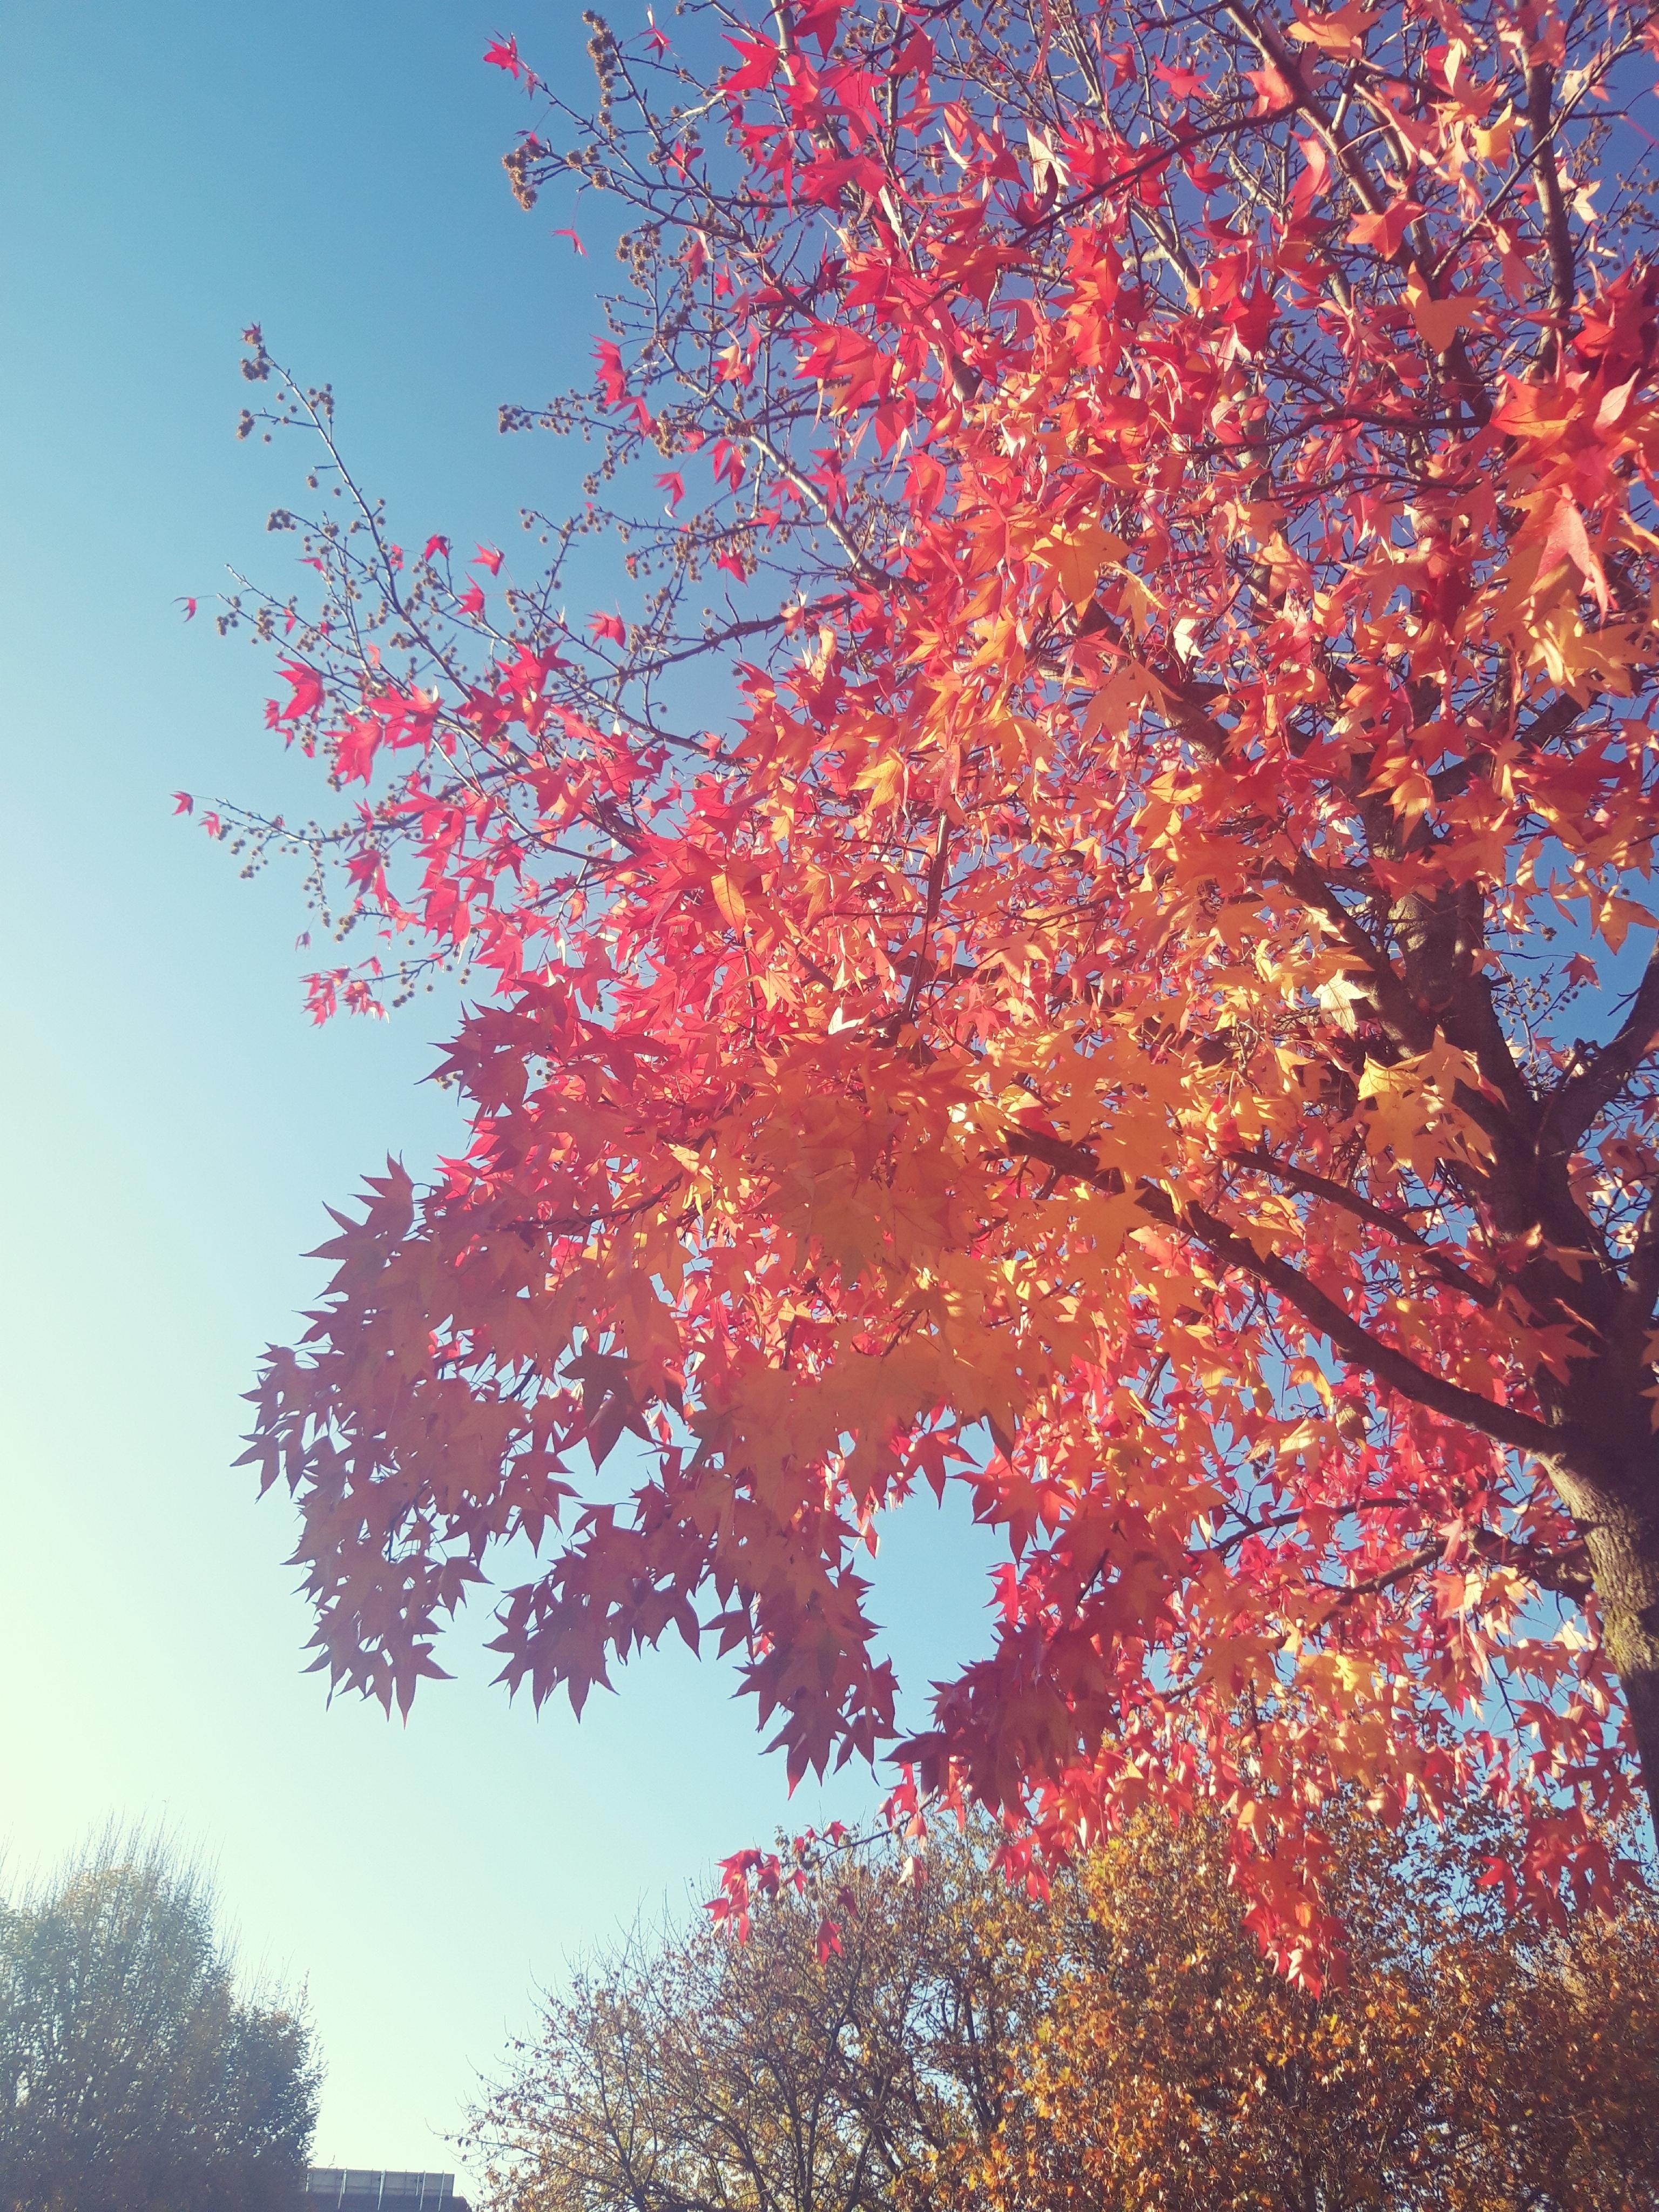 Wenn beim Spaziergang die Sonne die Farben der Blätter erleuchten lässt. 
#spaziergang 
#Baum
#Blätter